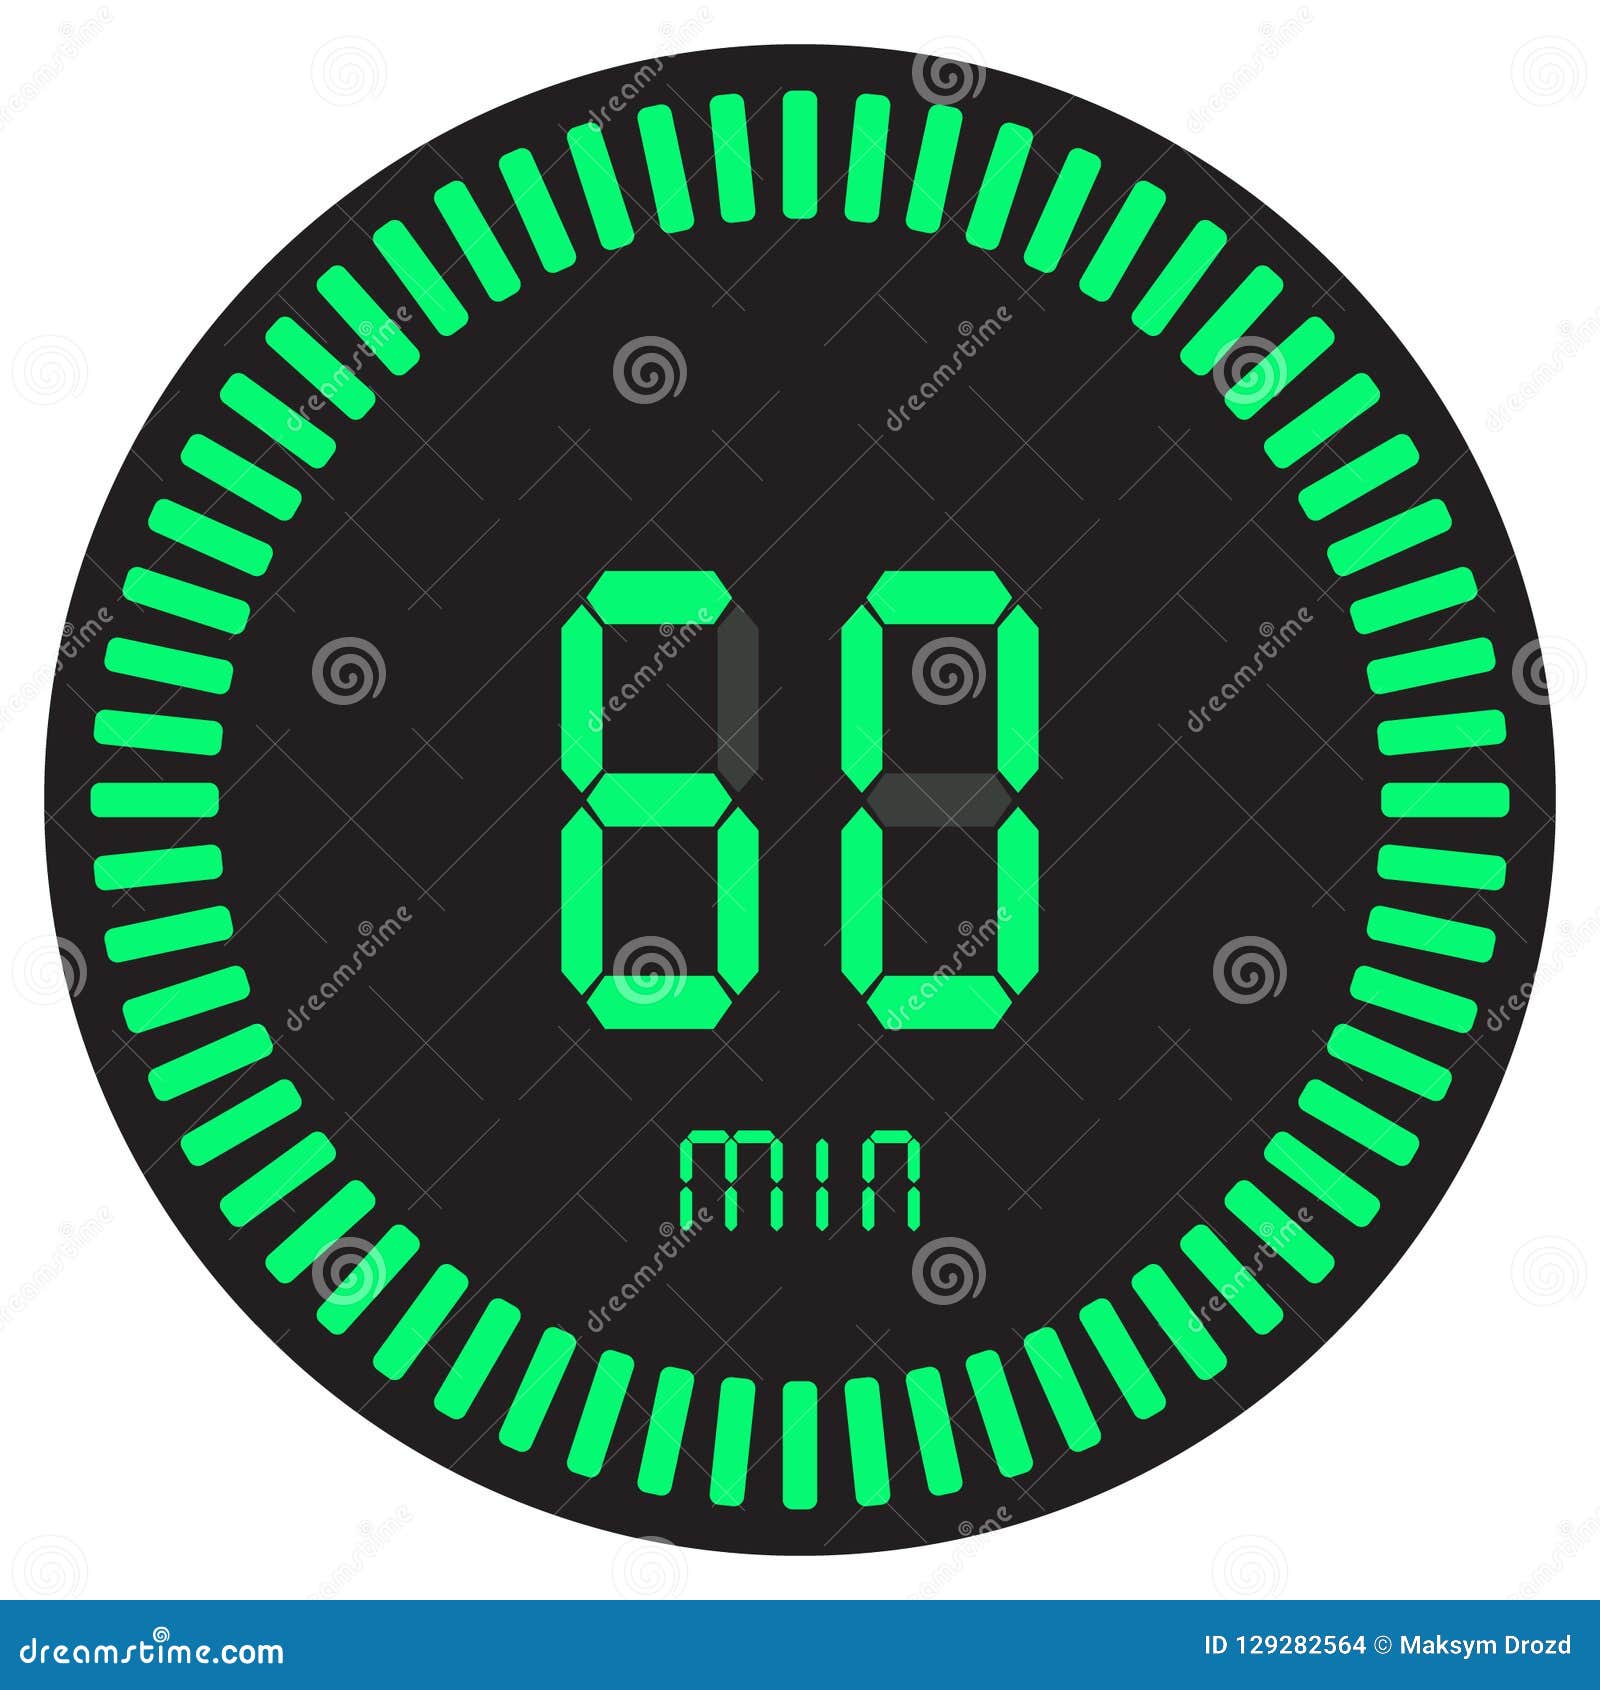 Đồng hồ bấm giờ điện tử xanh lá cây 60 phút, 1 giờ sẽ giúp bạn quản lý thời gian theo cách tốt nhất. Với màn hình lớn và số đếm chính xác, nó là công cụ hoàn hảo cho việc đếm ngược thời gian và báo động. Cùng xem nó để có một trải nghiệm tuyệt vời.